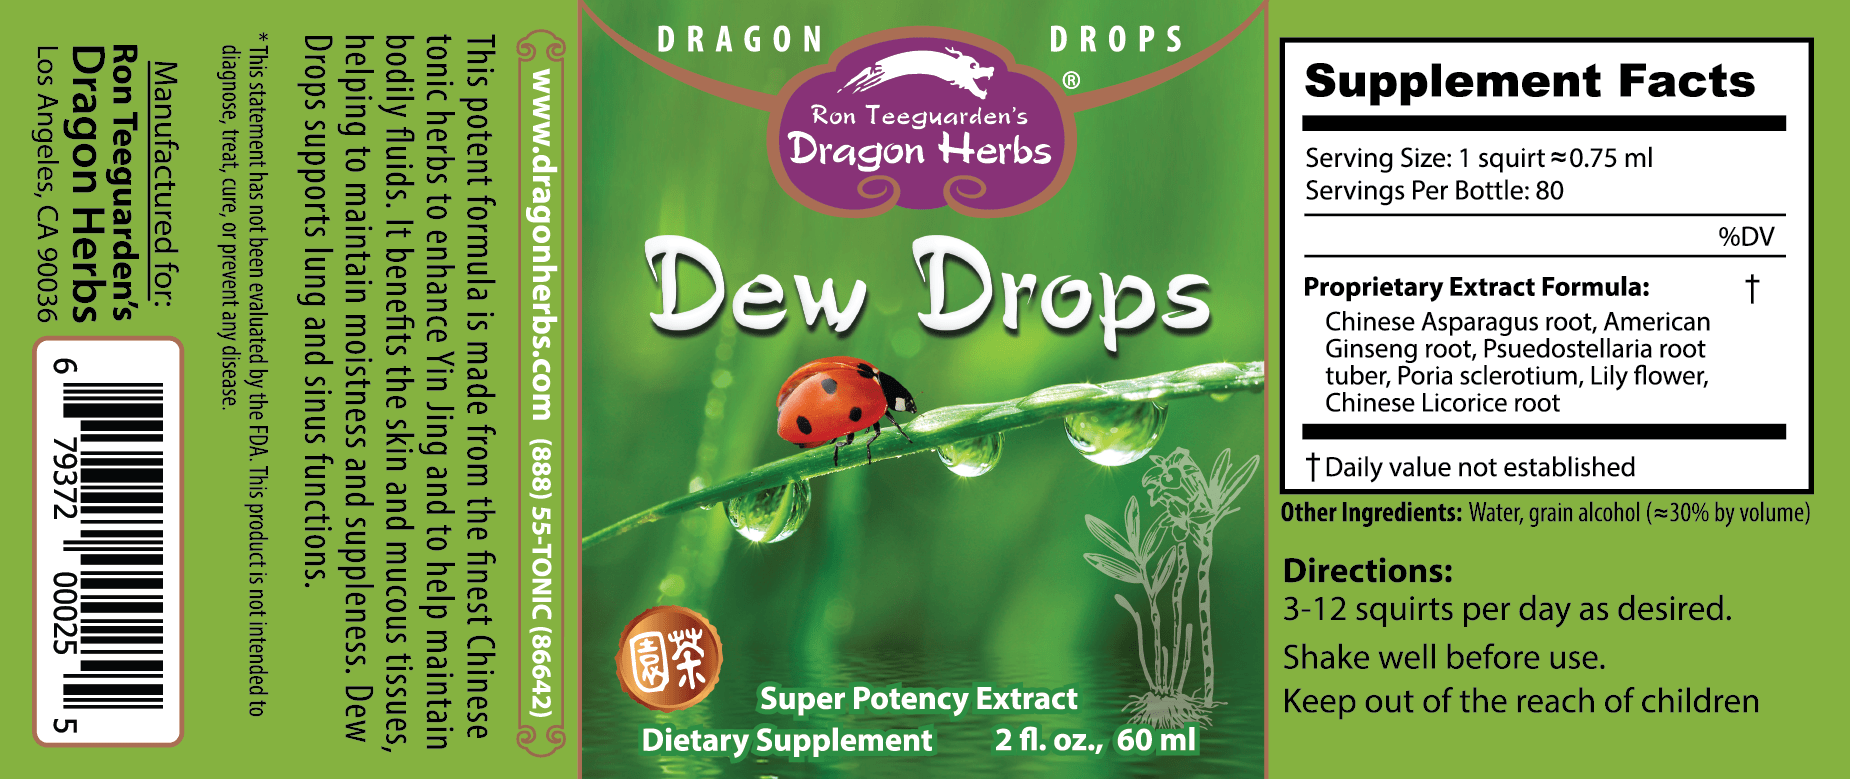 Dew Drops Label - Dragon Herbs